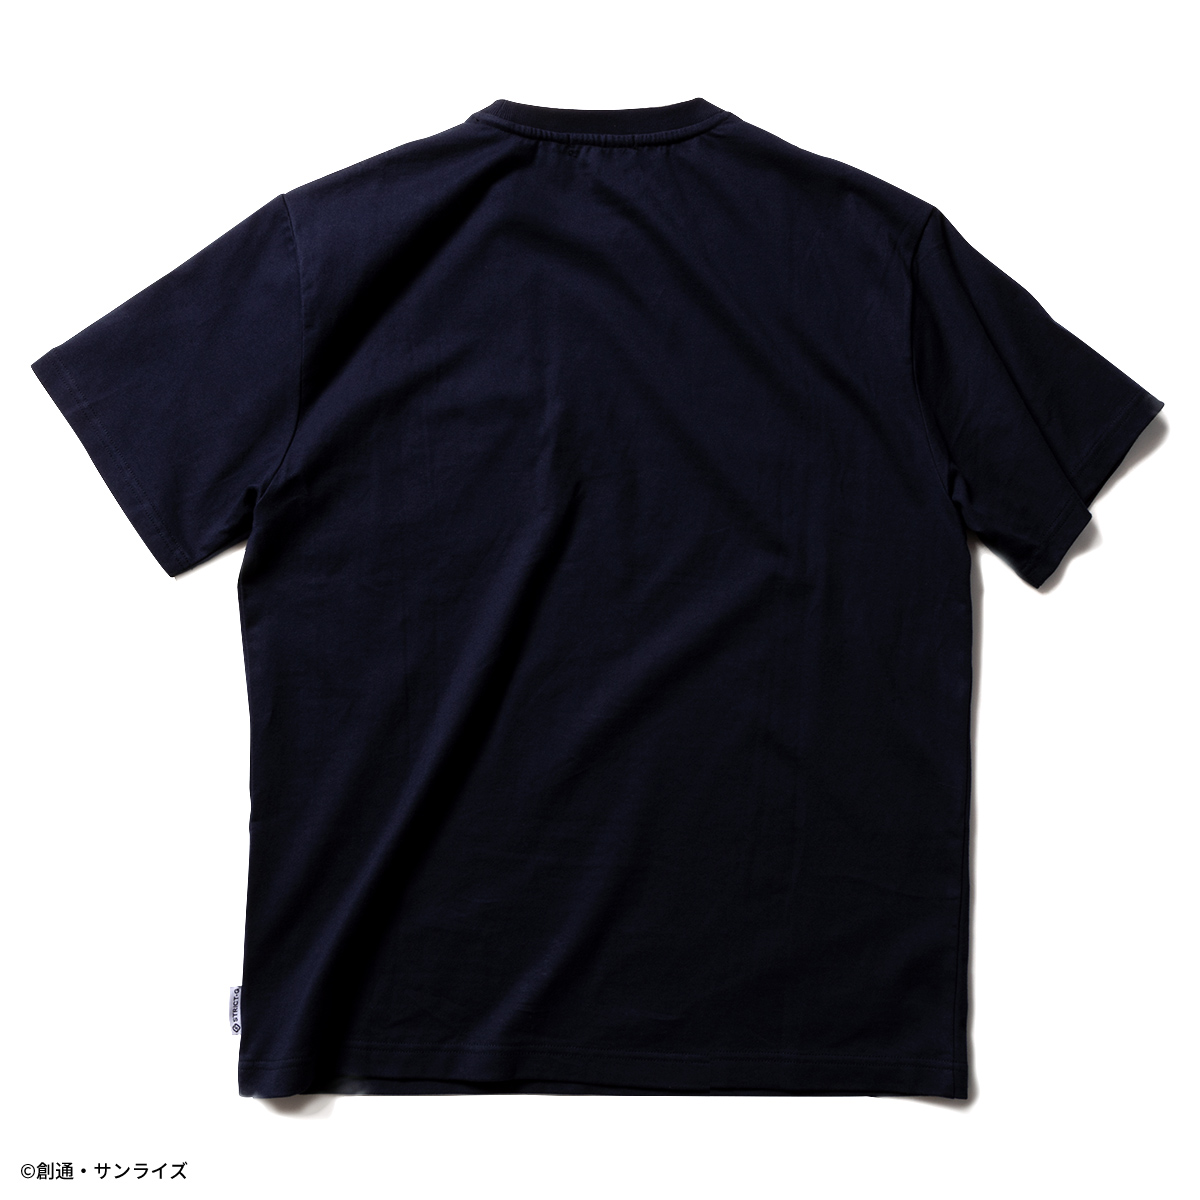 STRICT-G『機動戦士ガンダム 閃光のハサウェイ』ポケット付き半袖Tシャツ MAFTYモデル